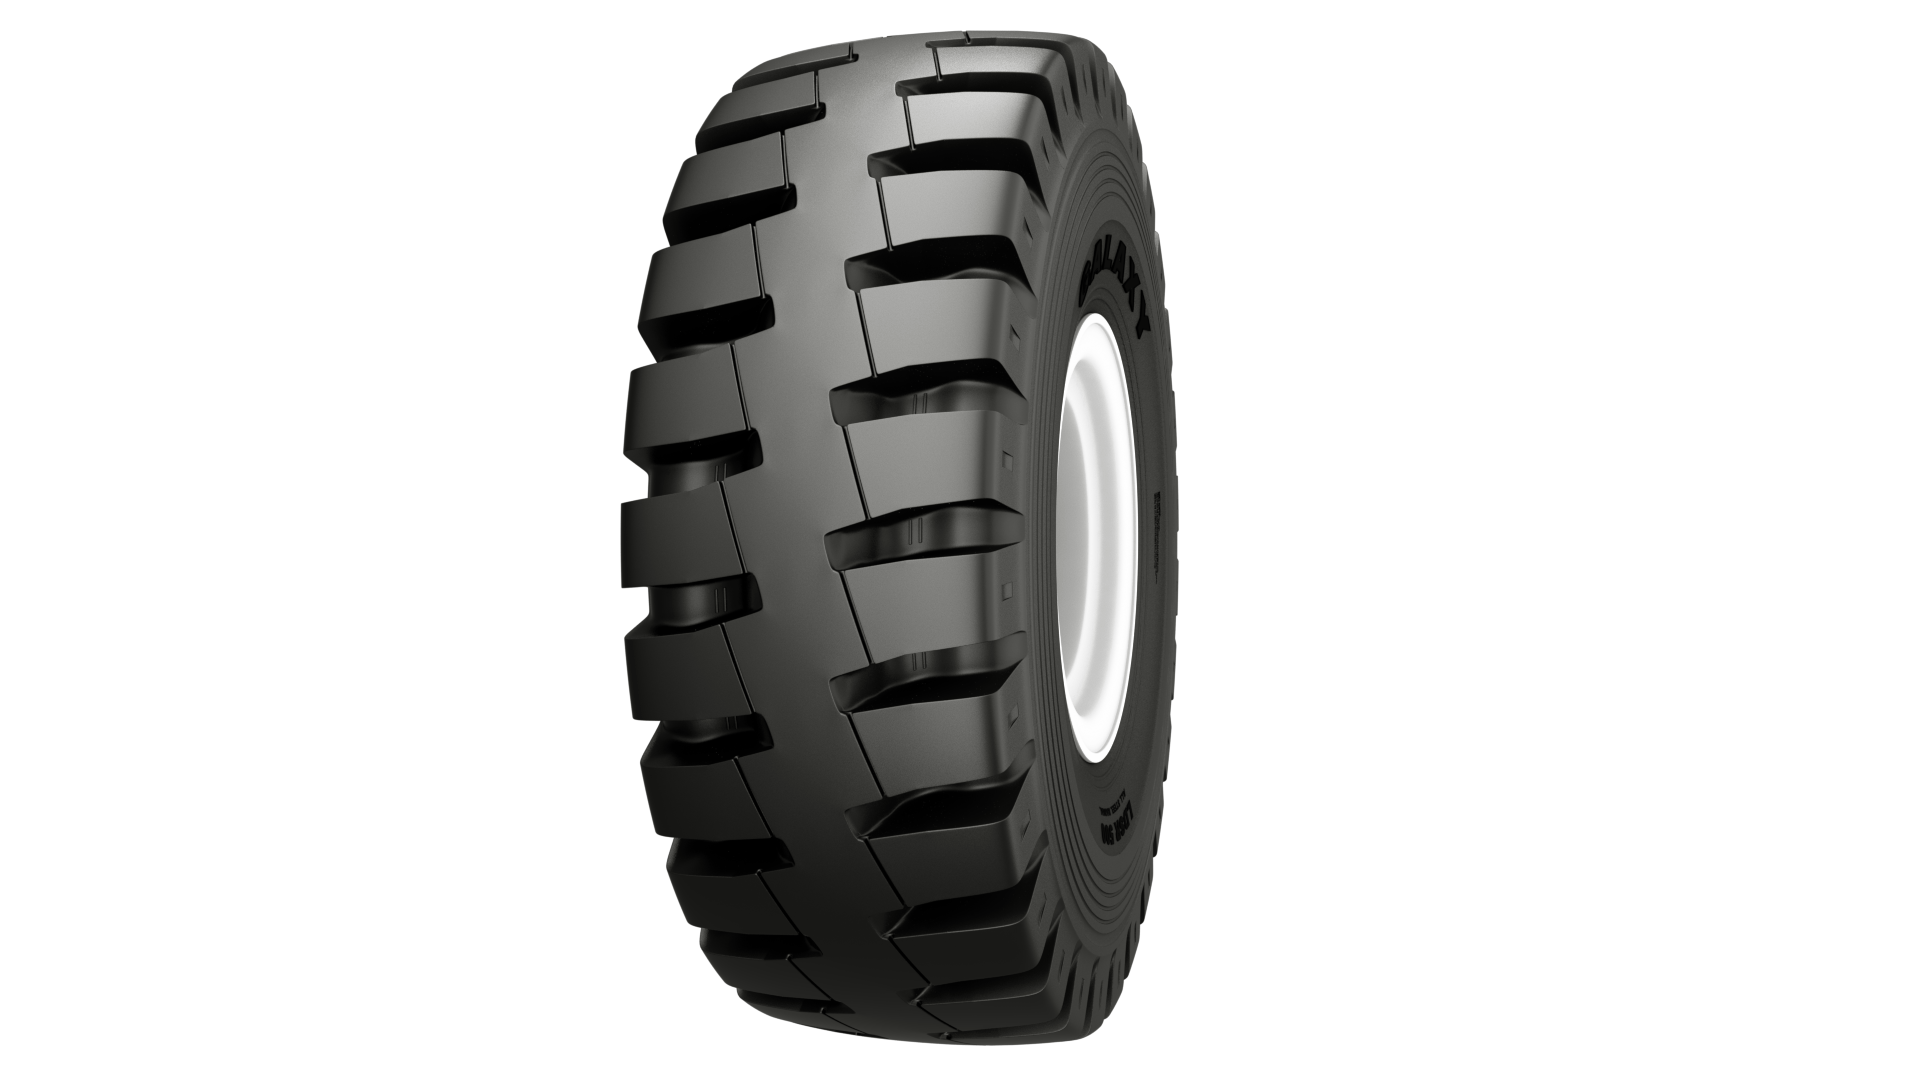 LDSR 500 GALAXY  Tires